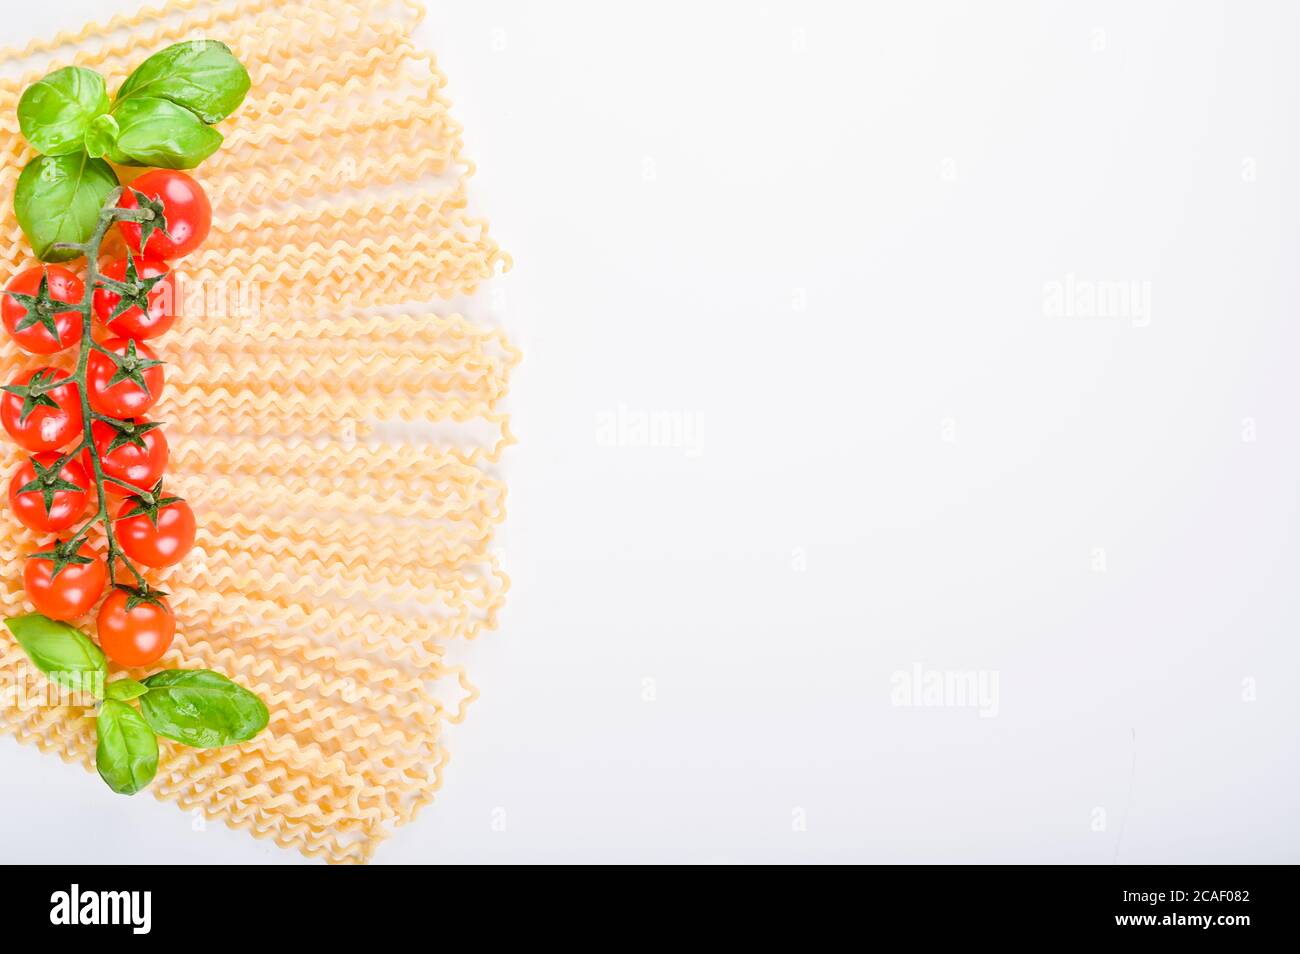 Fusilli lunghi bucati . Pâtes longues au curly sur une assiette blanche, avec des feuilles de basilic frais et des tomates cerises. Pâtes italiennes traditionnelles du sud. Photo de haute qualité. Copier l'espace Banque D'Images